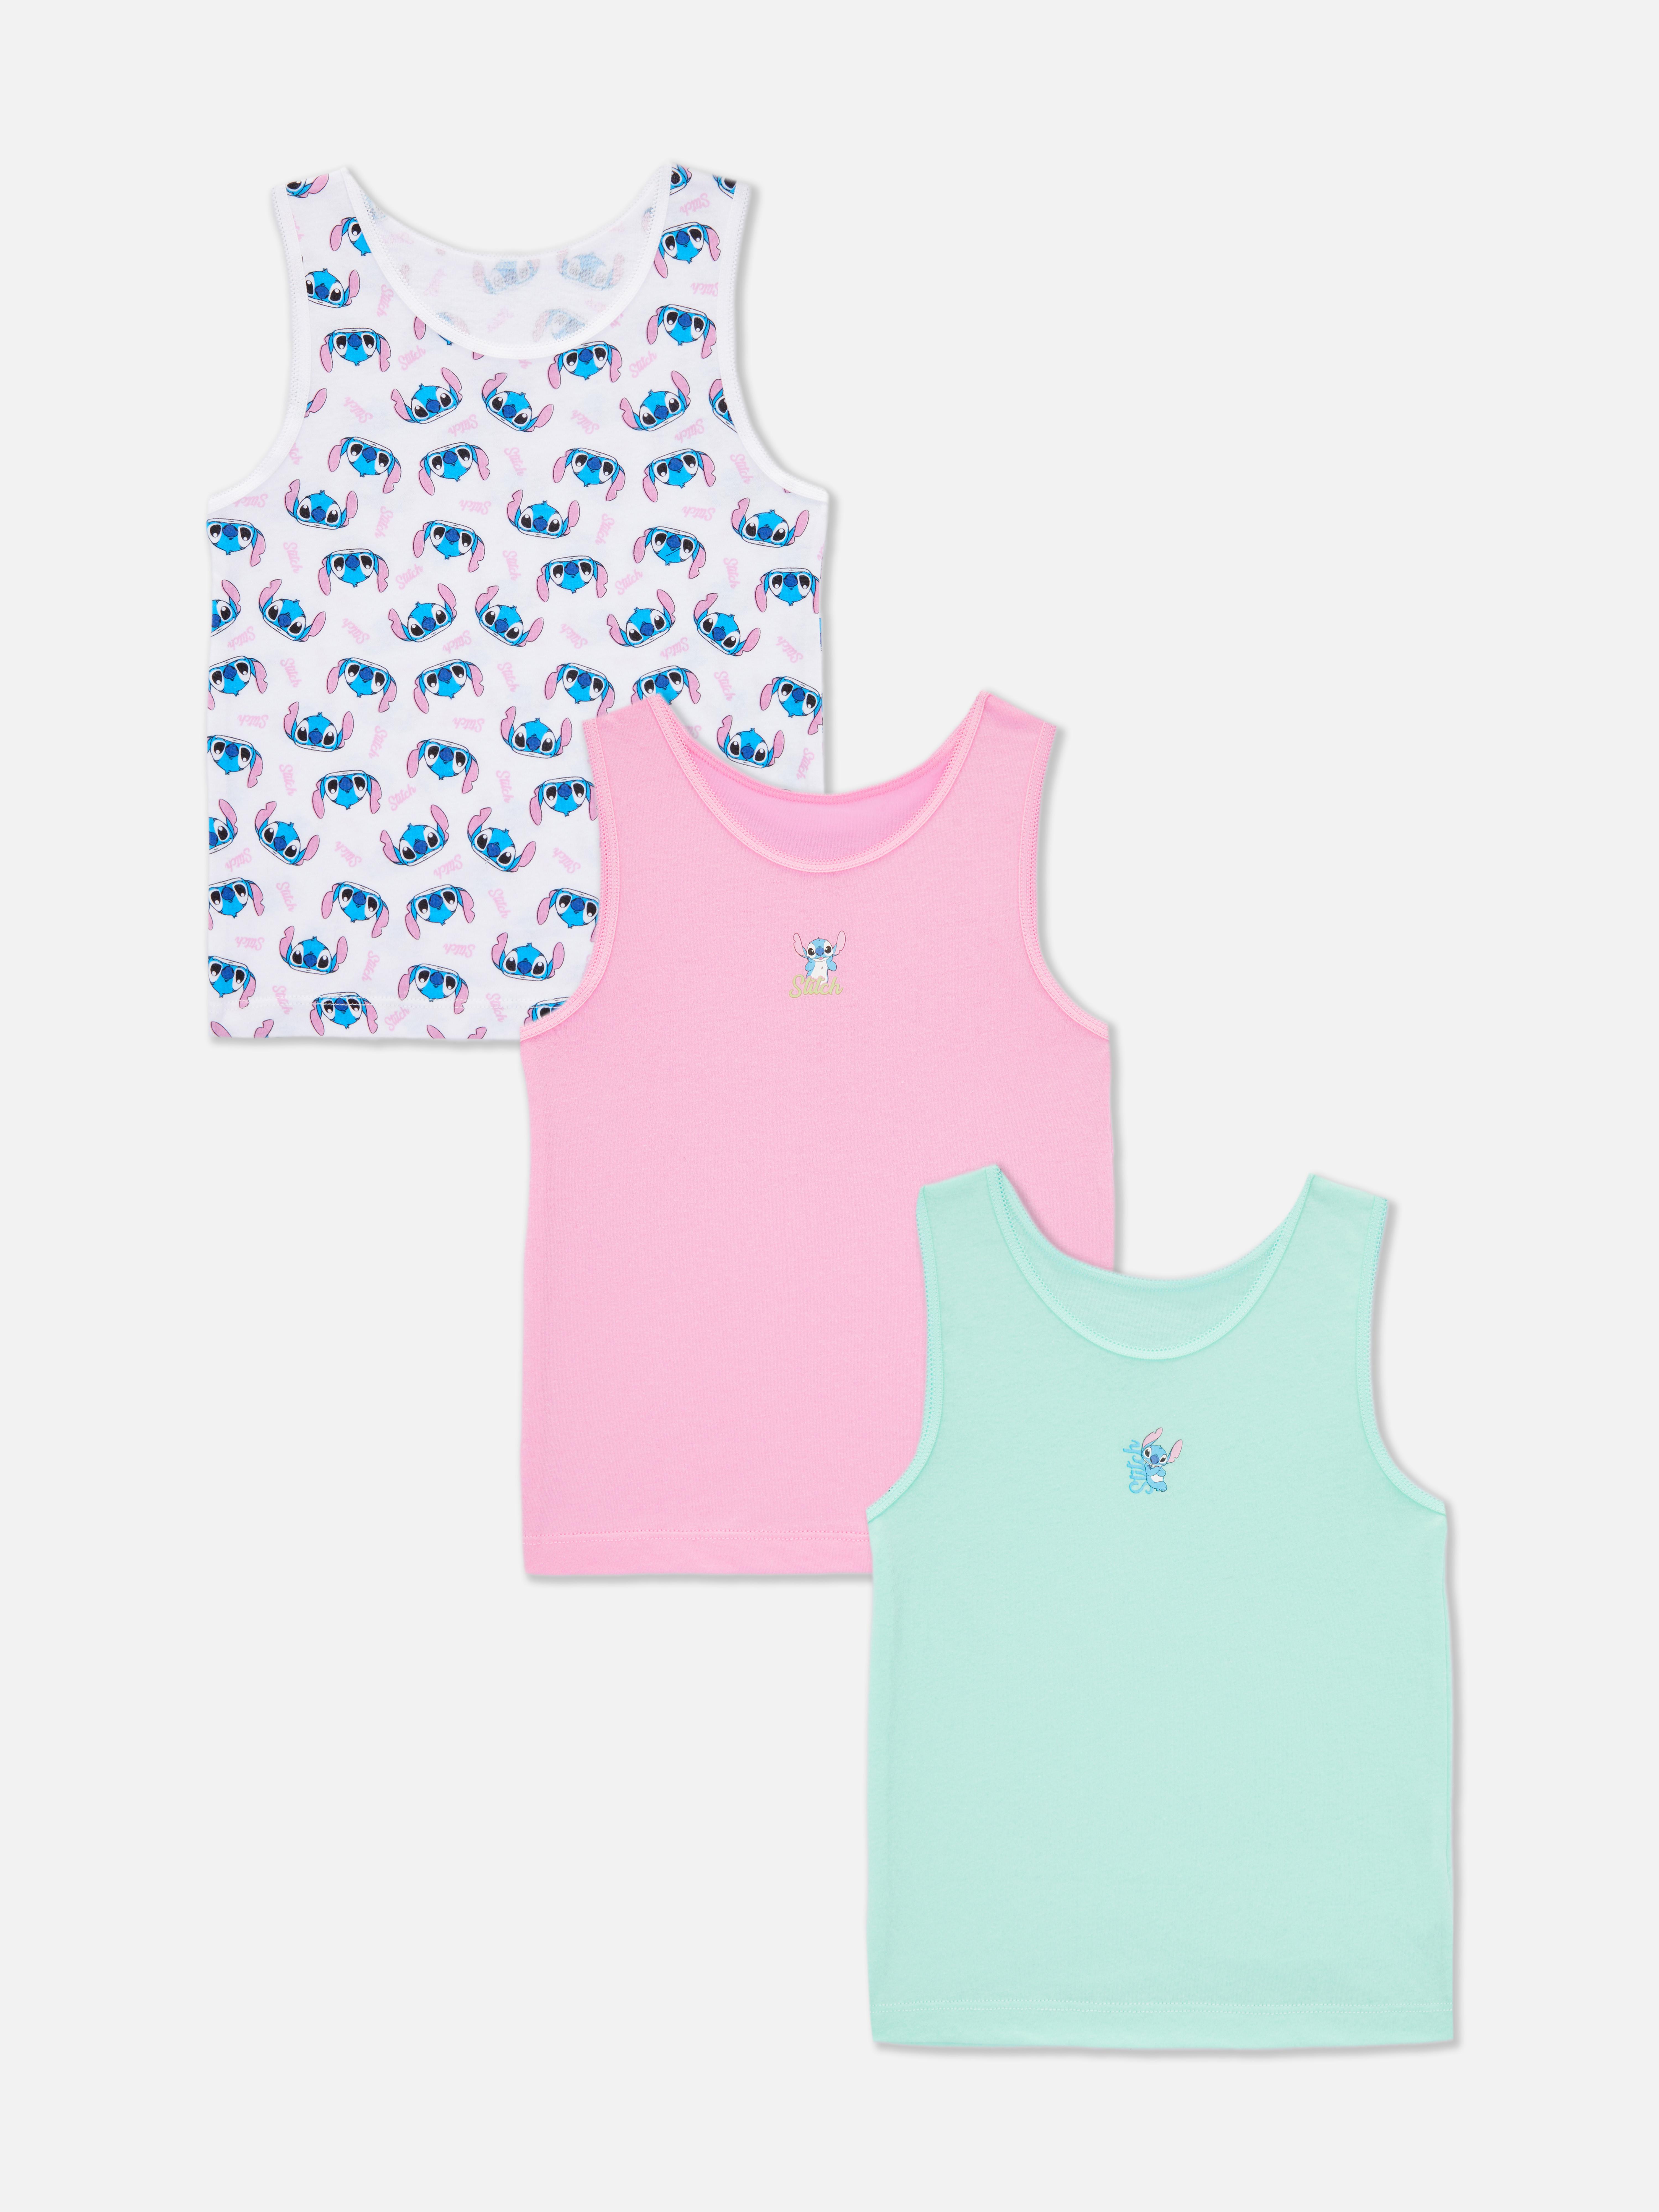 „Disney Lilo & Stitch“ Unterhemden, 3er-Pack